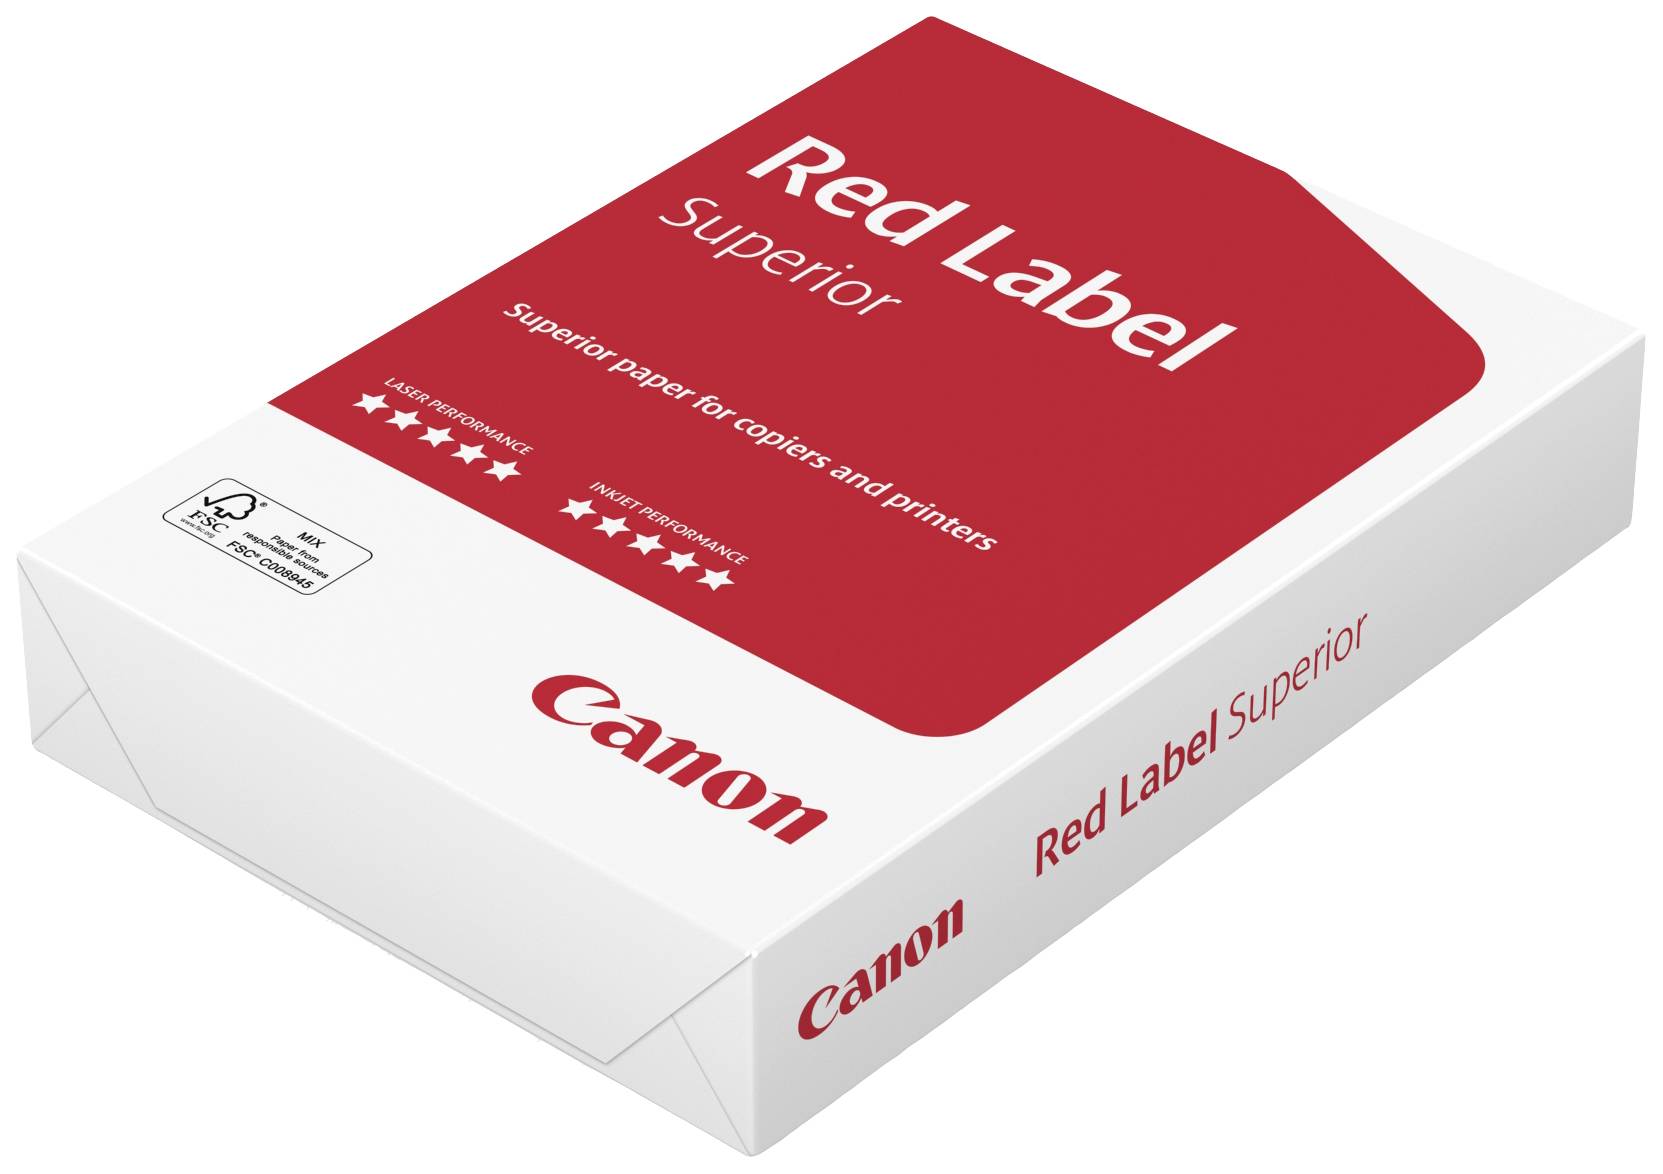 CANON Red Label Superior Fsc